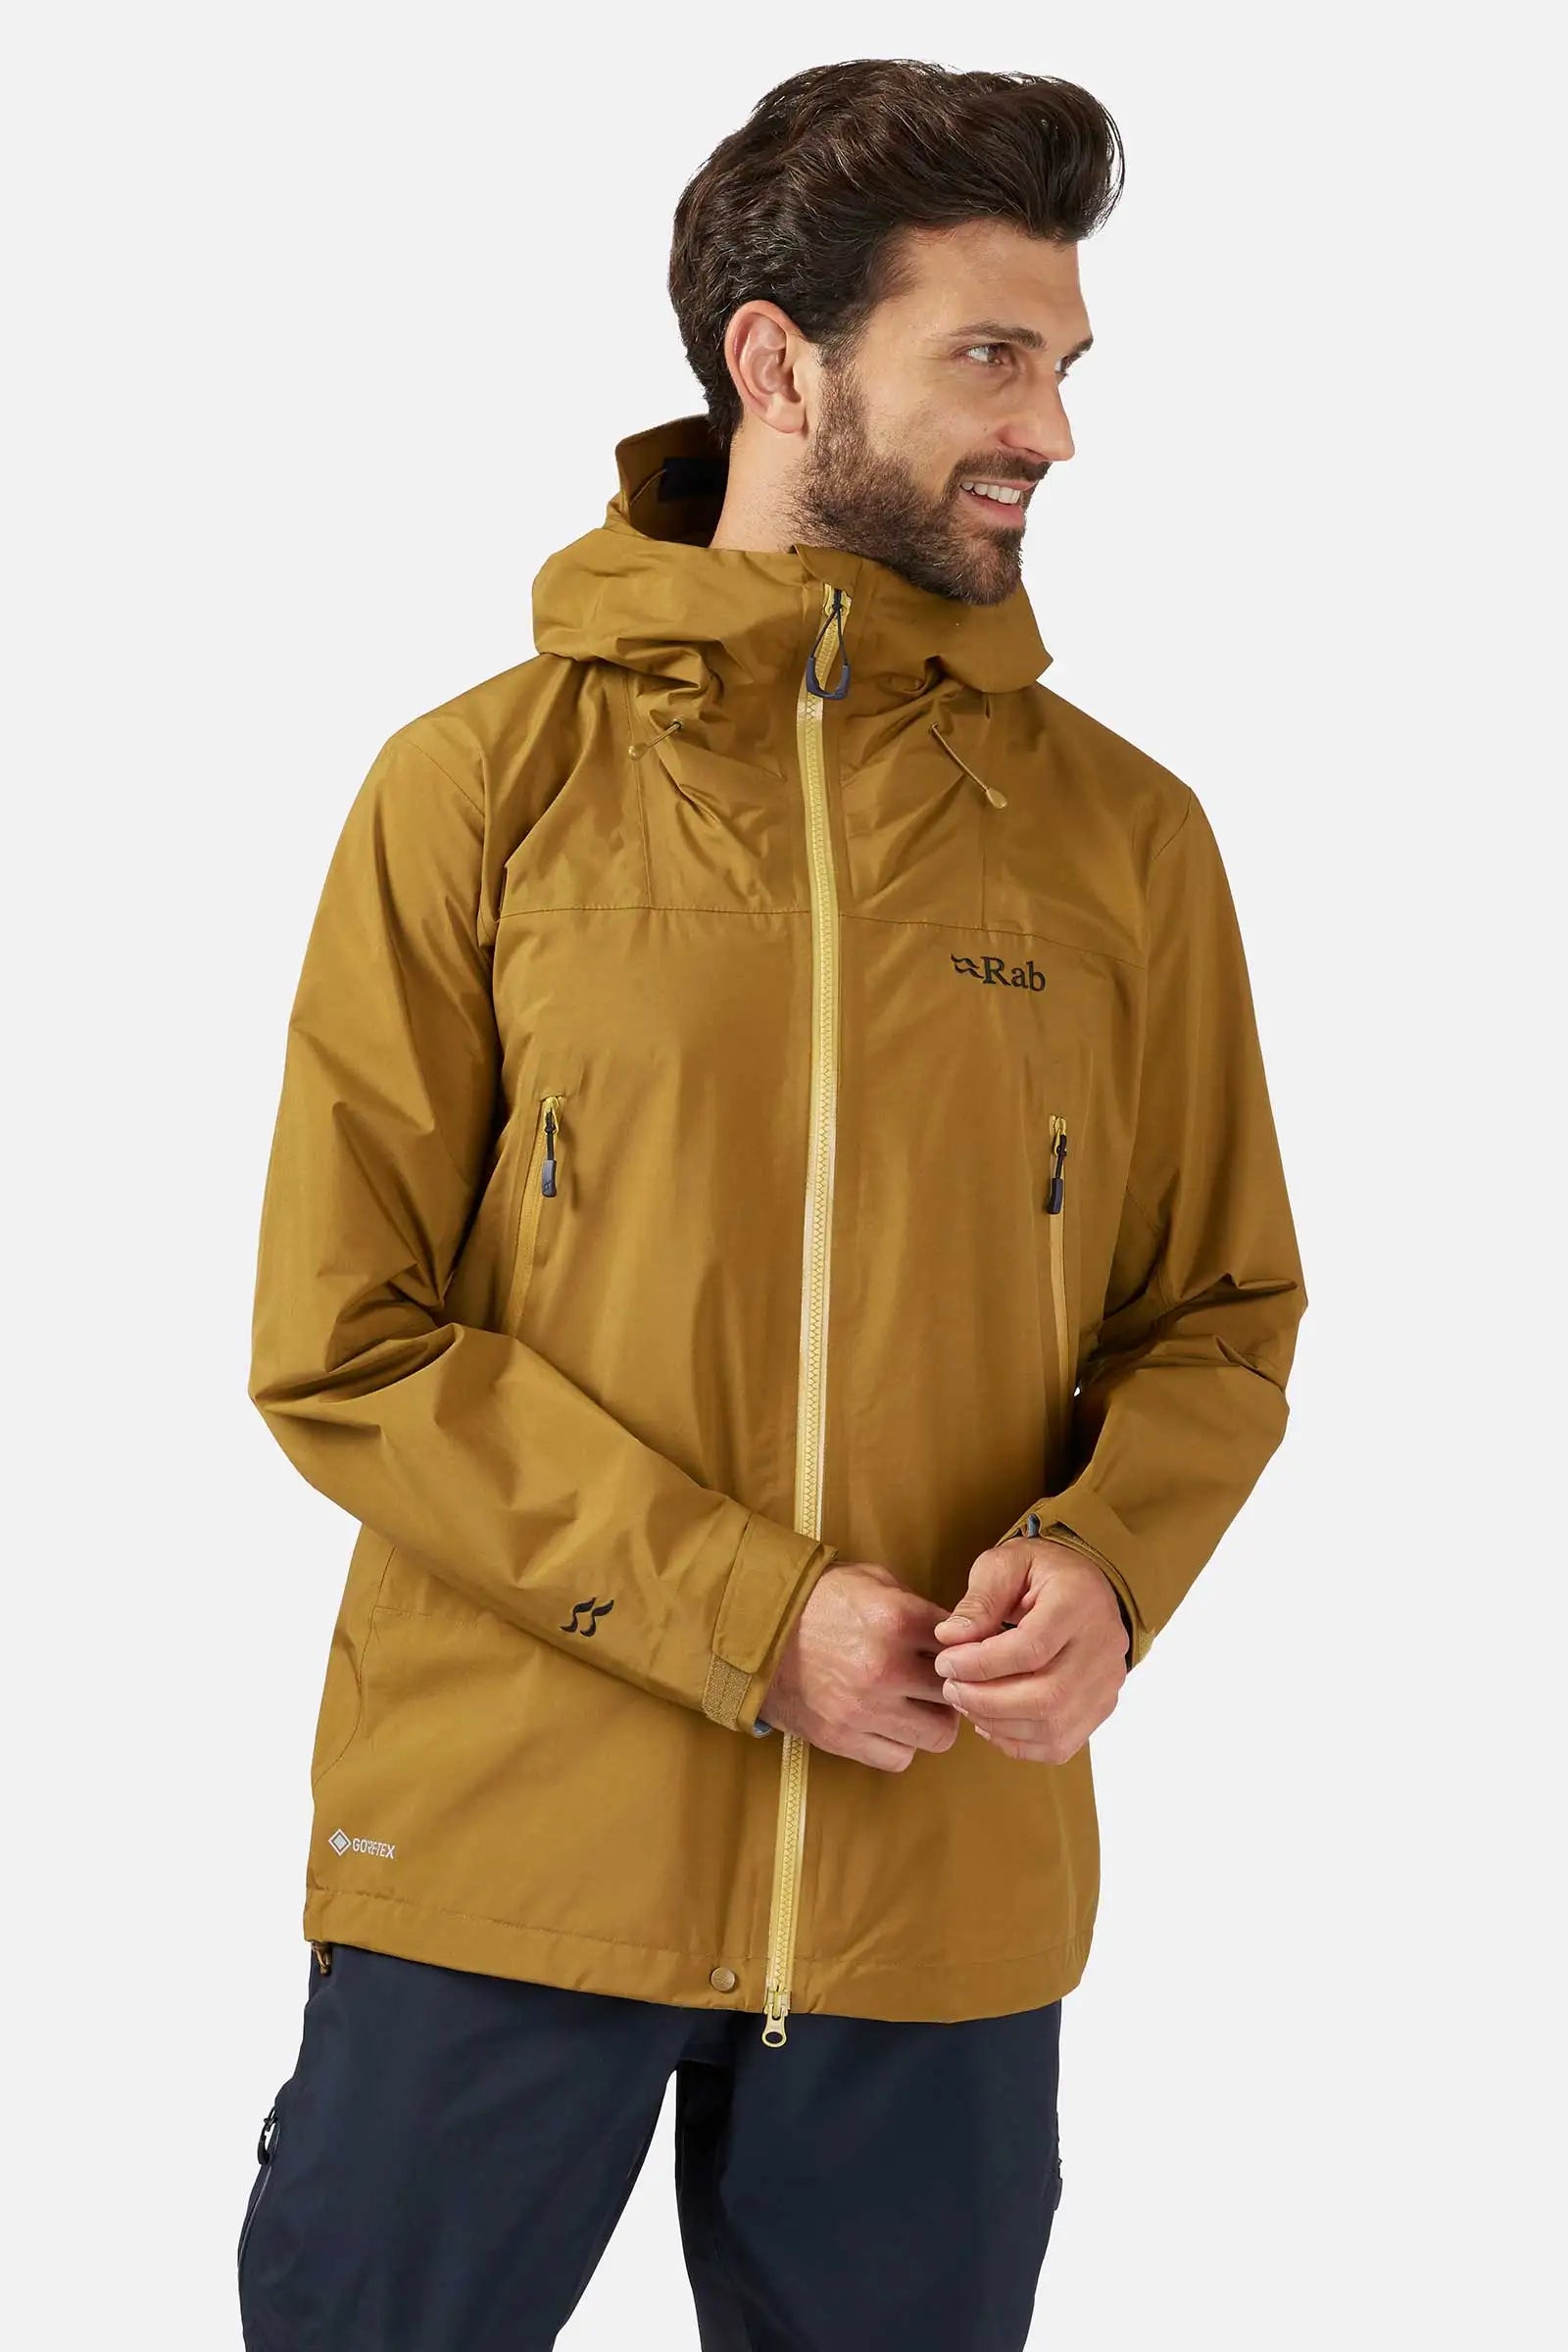 Rab Men's Kangri Gore-TEX Pacelite Plus Jacket - Sample Size Medium - No Swing Tag